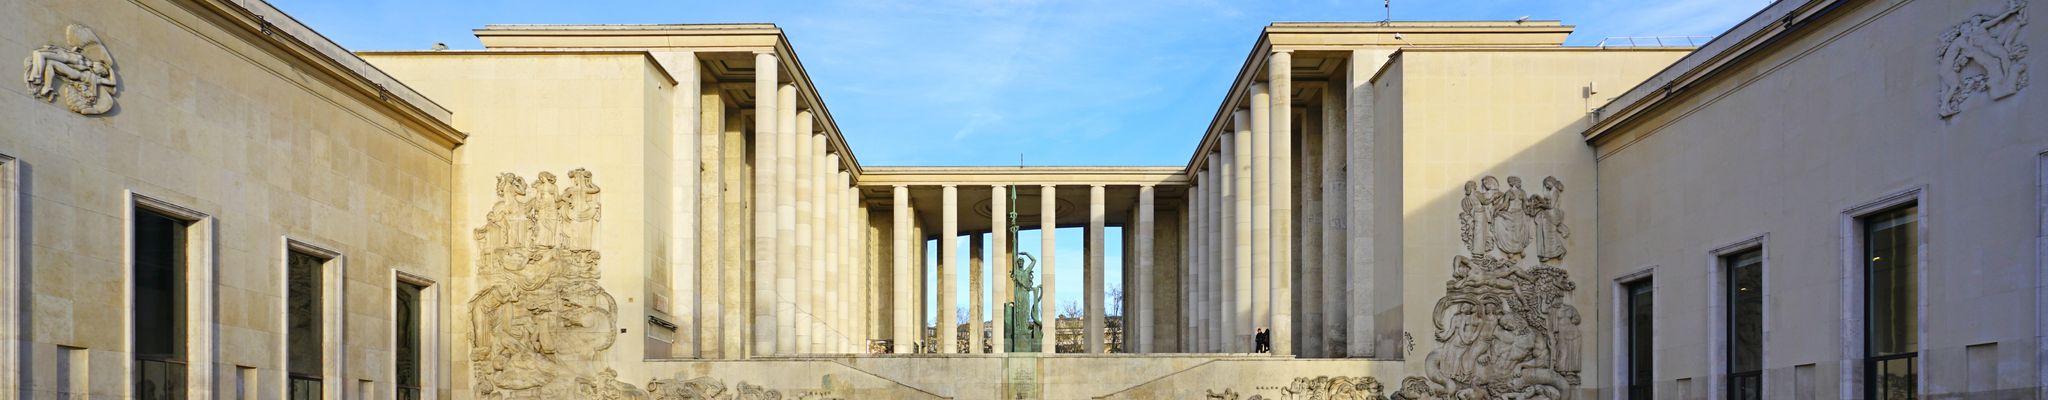 Musée d'art moderne de la ville de Paris